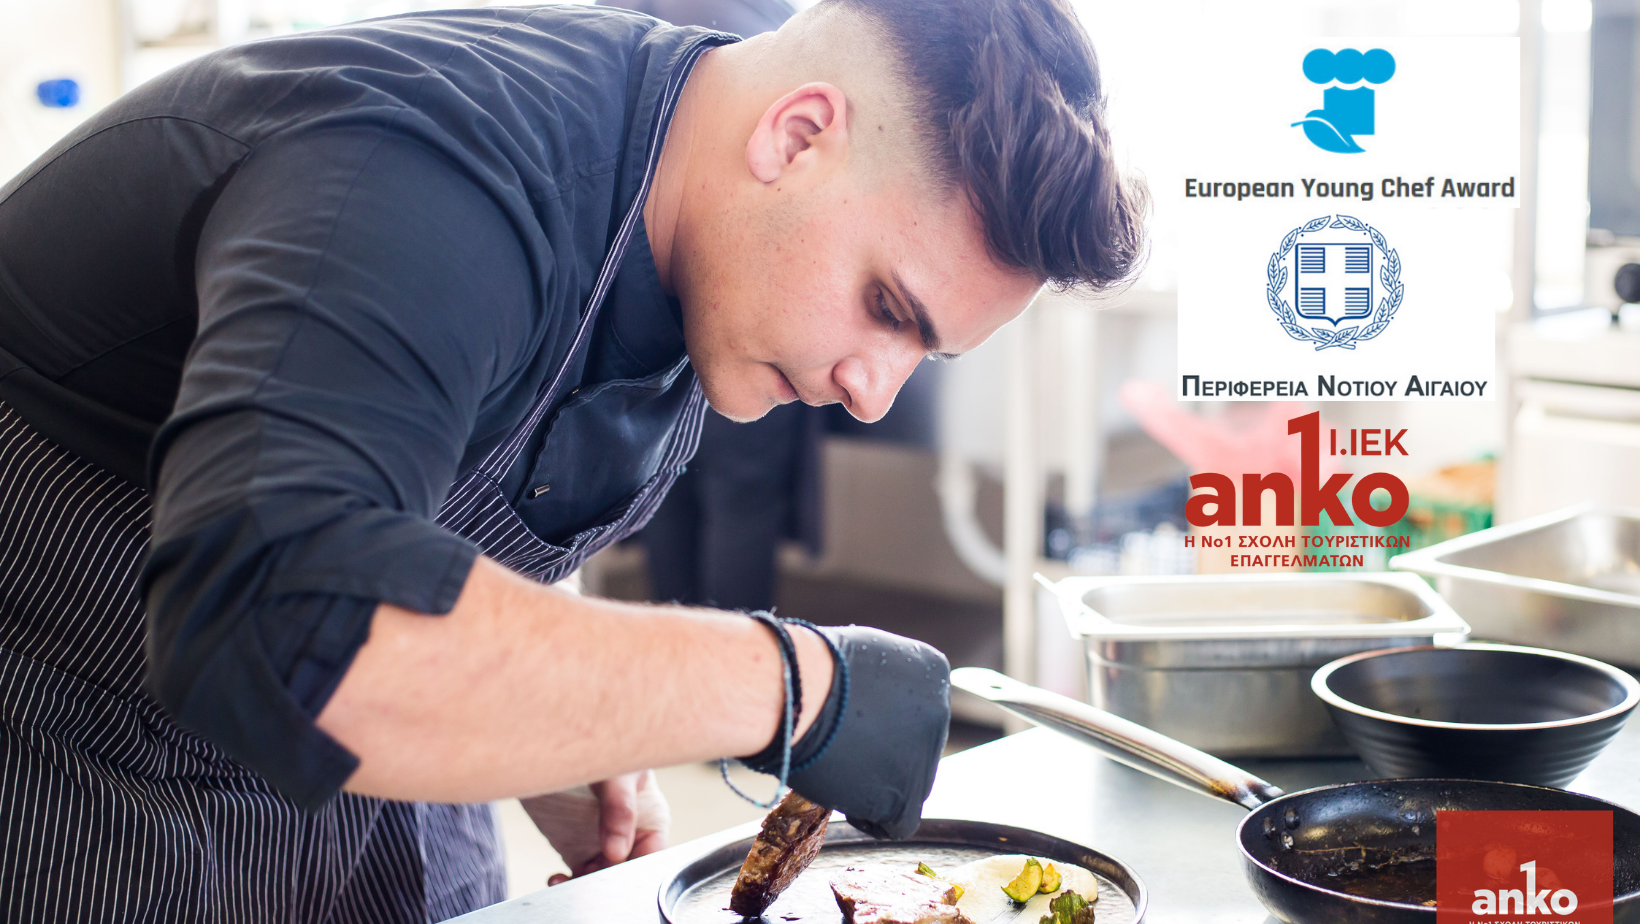 Δήλωσε συμμετοχή στο Διαγωνισμό European Young Chef 2021!